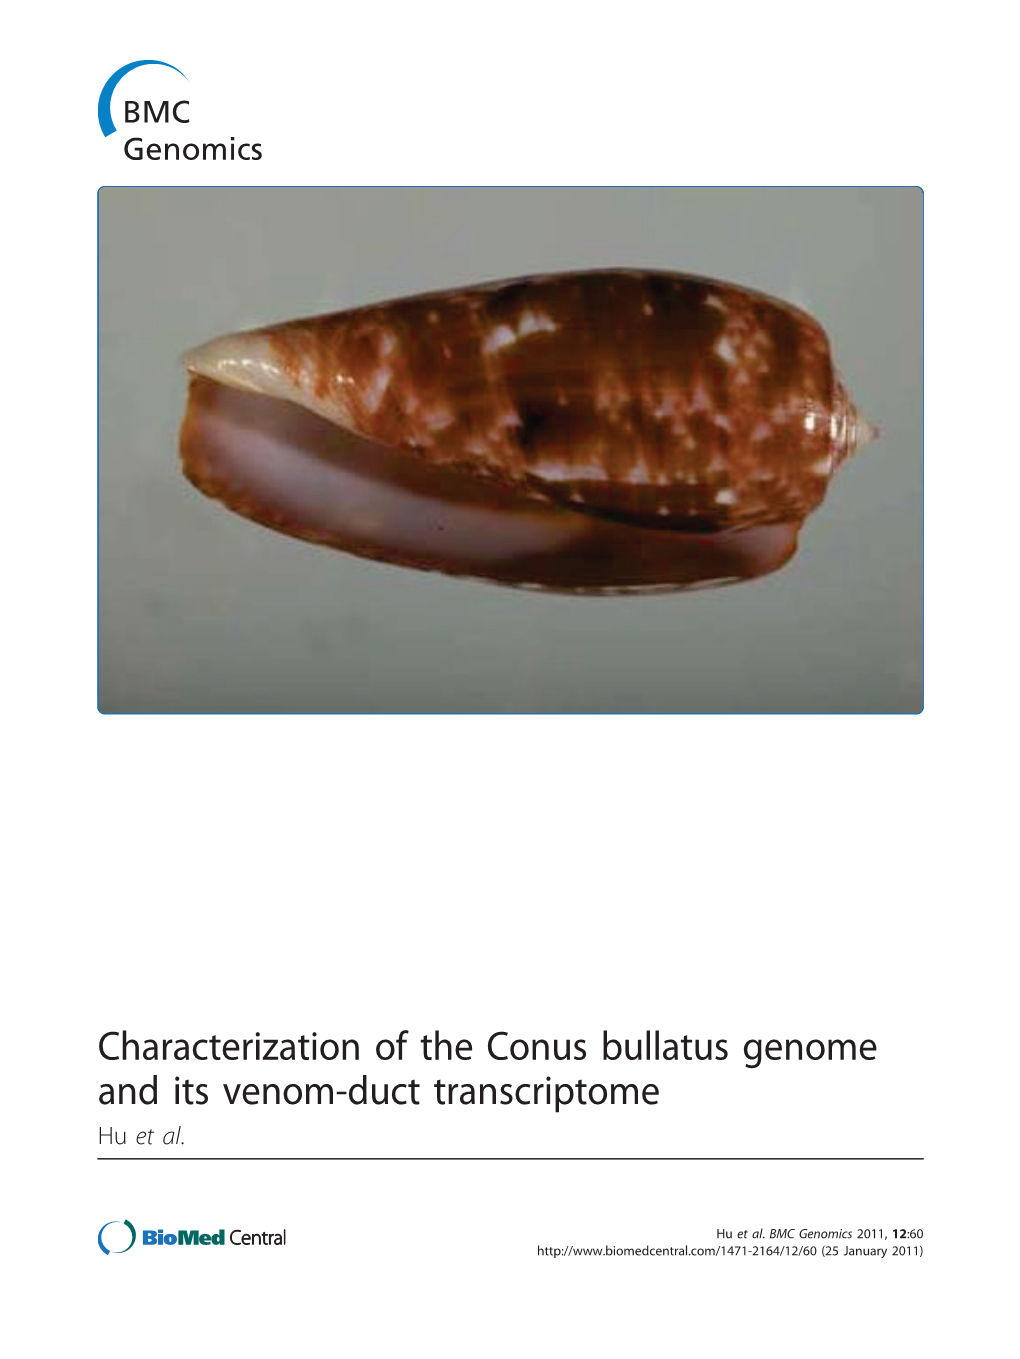 Characterization of the Conus Bullatus Genome and Its Venom-Duct Transcriptome Hu Et Al